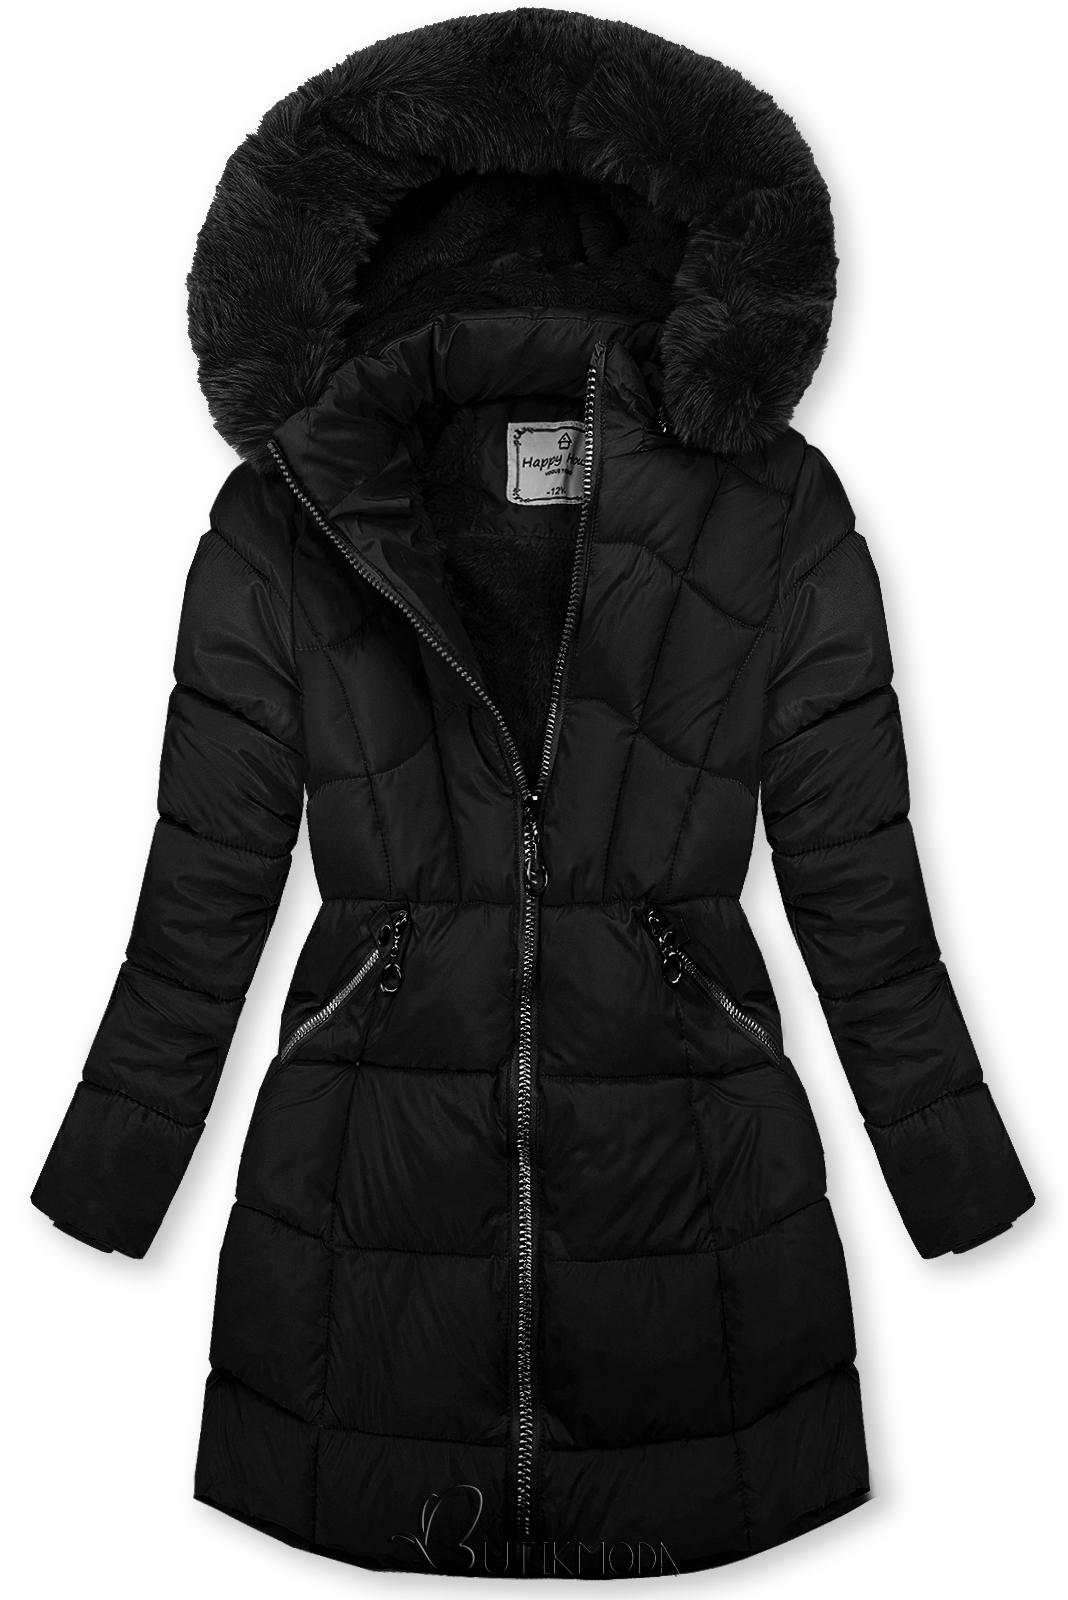 Fekete színű téli kabát kesztyűvel